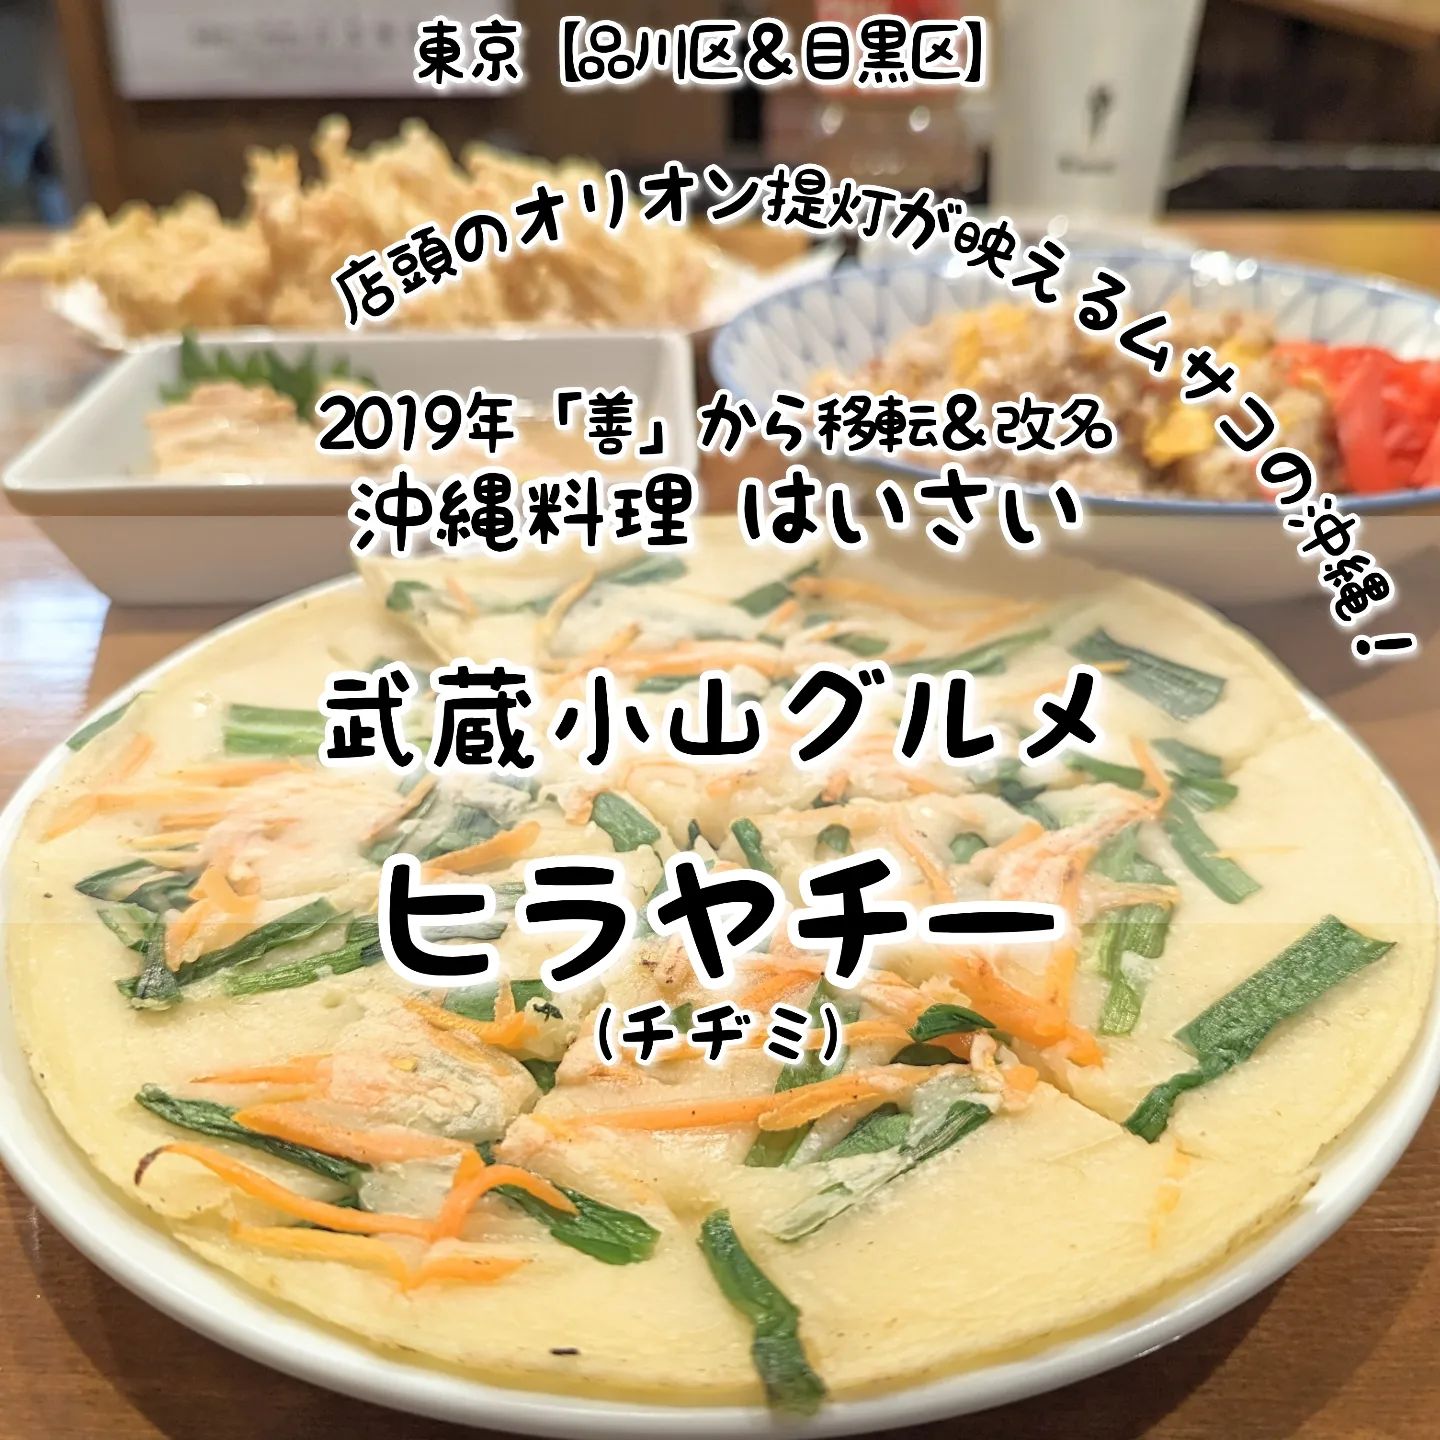 #武蔵小山グルメ情報 #はいさい #ヒラヤチー あっさり系－－☆－－コッテリ系オールド系－－☆－－ニュー系おもいで度－－－☆－ #侍猫度 野菜のアクセントにシンプルな味わいのヒラヤチーが美味しい！謎の沖縄料理ヒラヤチーは、少し厚めのクレープみたいな食感でニラや人参のアクセントが癖になるシンプル系の美味しい仕上がりとなっております！一緒にいただいた角煮もコンビーフチャーハンもえびしらすかき揚げも美味しいのですが、最近はコンビーフチャーハンがマイブームでございますね！こちらのお店は、2019年に移転して善から改名された沖縄料理屋でございます。店頭には、鮮やかな色使いのオリオンビール提灯が並んでいて本場沖縄居酒屋感が武蔵小山味わえますぞ。店内はカウンターとテーブル席がございまして、期待通りの下町居酒屋な空間が広がっております。カウンター内には、粋なベテランの大姉様方がおりますので、お一人様も初めての方も安心のお店でございます！もちろん常連さんたちも新規に優しいので、ディープな武蔵小山情報を聞きたいときにもぴったりなお店でございます。ちなみに、キッチンの大姉様は、沖縄本島出身のとの事でございますぞ！場所は、武蔵小山駅から西小山方面に進み26号線を越えて緑道公園の隣道に入ってすぐ右手側にございます。三井住友銀行を通り過ぎ牛太郎やネモを越えて十字路渡ったらすぐ右手側にございますね。【侍猫を応援】「フォロー」＆「いいね」＆「保存」どうぞよろしくお願いします！【侍猫をもっと応援】メインサイトもぜひご覧ください！いろいろ見ていただくと侍猫がさらに元気になって武蔵小山グルメをもっと食べ歩けるようになります！（お店の地図＆追加画像あり！）→ https://musashikoyama.samuraicat.jp/ → @musashikoyama.news ※メインサイトへの移動はプロフィールのURLが簡単！【侍猫に連絡】気になるお店やおすすめの新メニュー情報などお気軽にDMください！気まぐれに投稿いたします！もちろんお仕事の依頼も受付中でございます。 #武蔵小山 #武蔵小山グルメ #西小山 #戸越銀座 #不動前 #碑文谷 #戸越 #中延 #荏原中延 #目黒本町 #下目黒 #品川区 #品川区グルメ #目黒区 #目黒区グルメ #東京 #東京グルメ #東京ランチ#musashikoyama #tokyofood #tokyo #武蔵小山沖縄料理 #東京沖縄料理 #沖縄料理